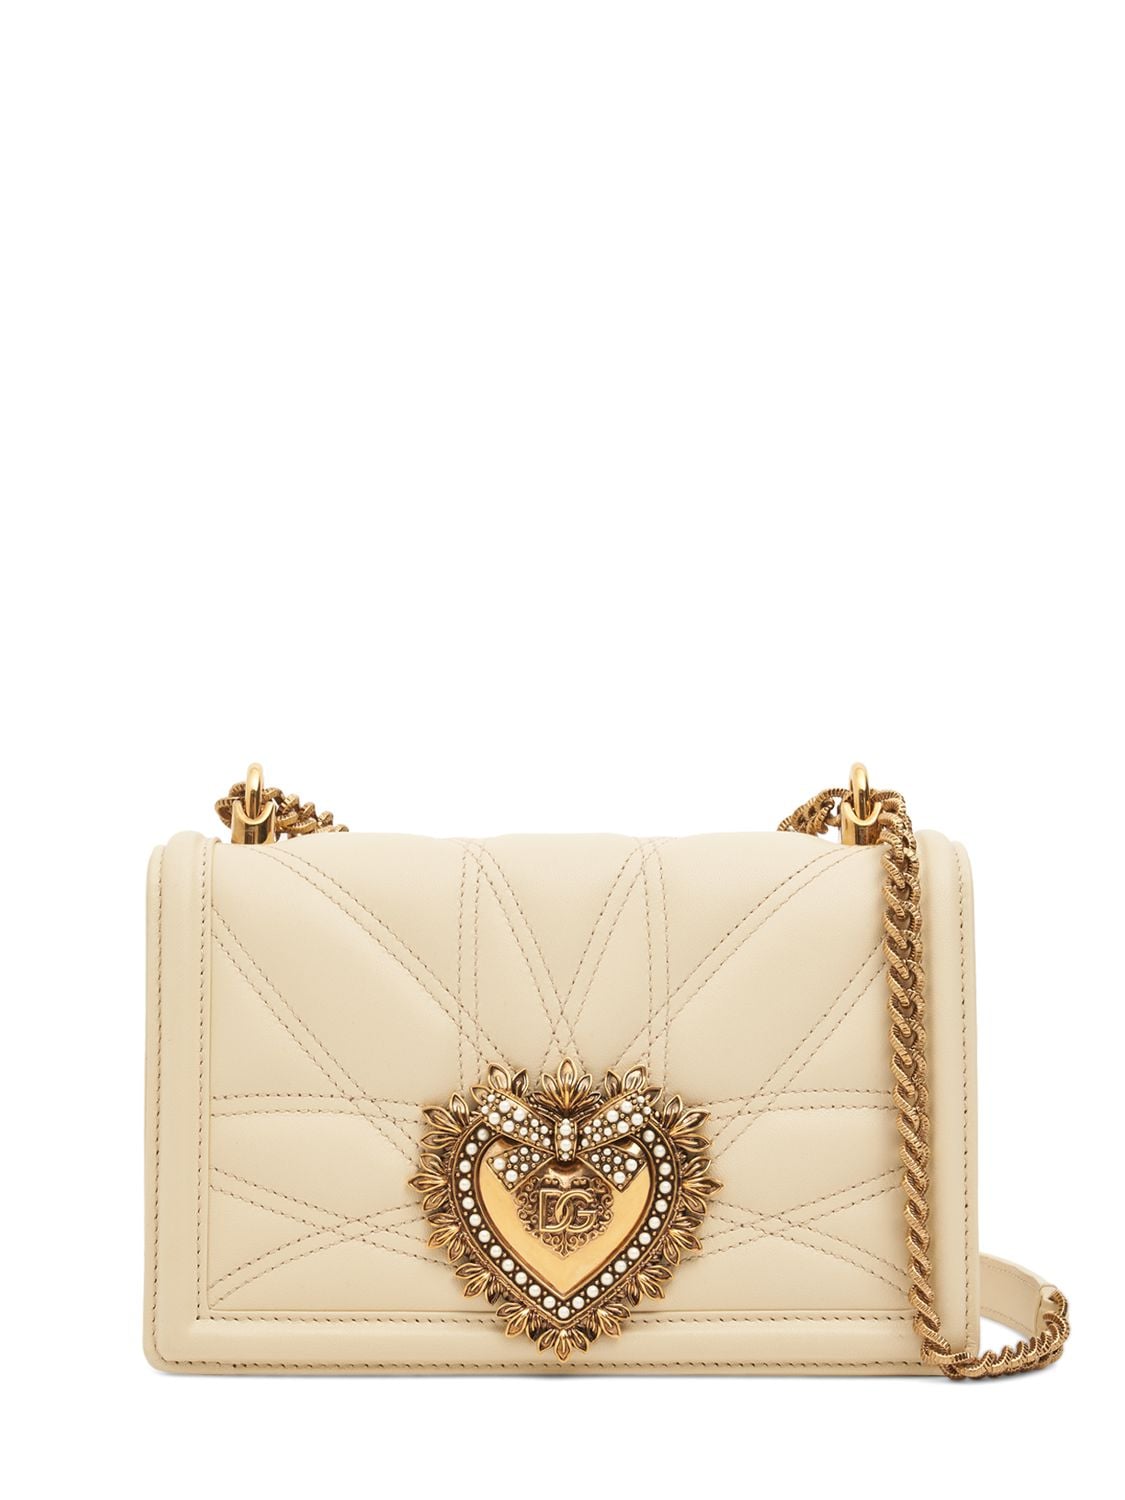 Dolce & Gabbana Devotion Leather Shoulder Bag In Burro